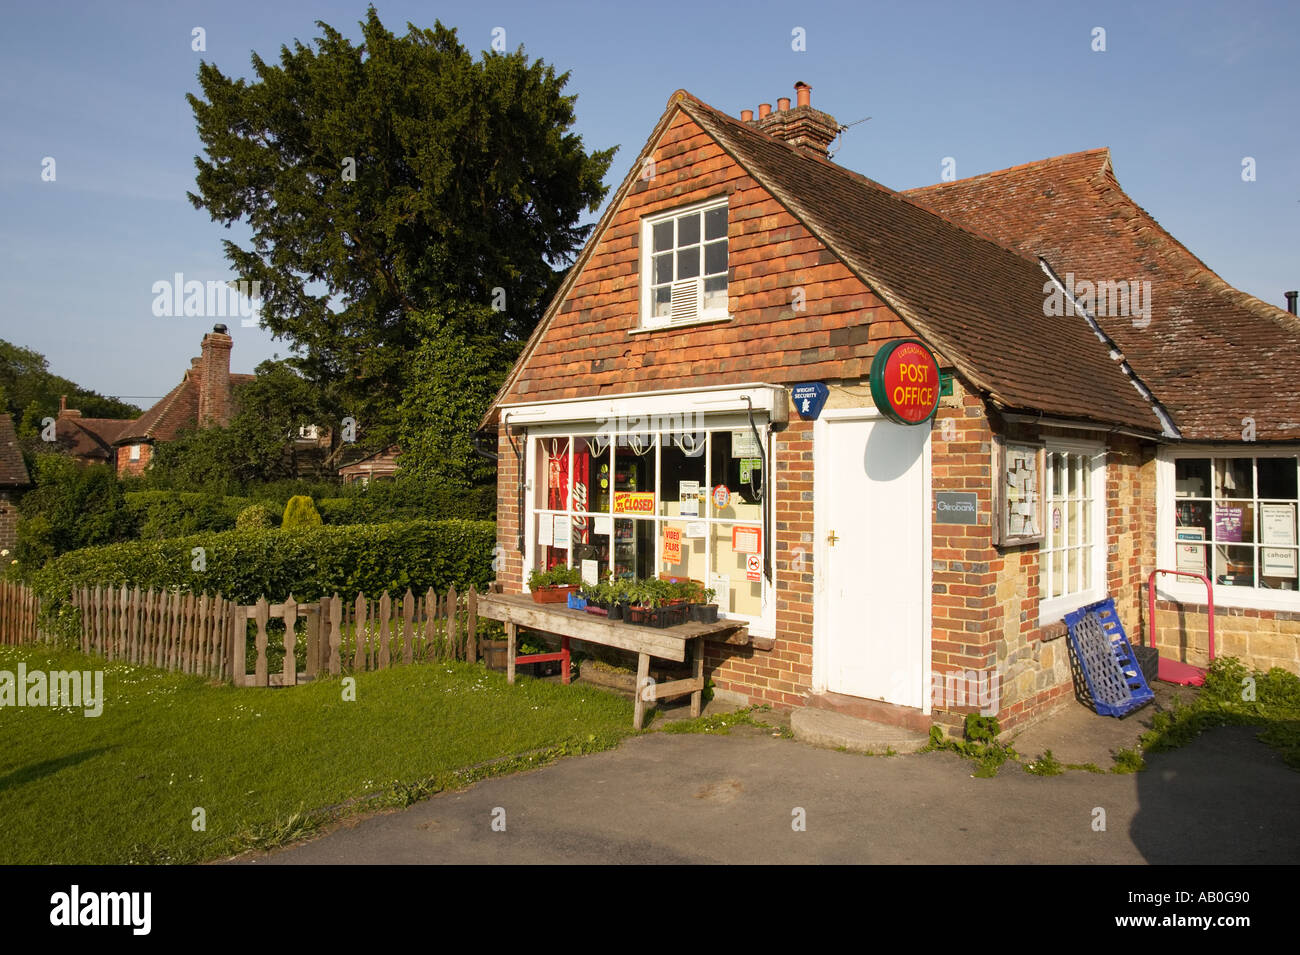 Tienda en la aldea y una oficina de correos en la tienda de la esquina Lurgashall, West Sussex, Inglaterra, Reino Unido. Foto de stock